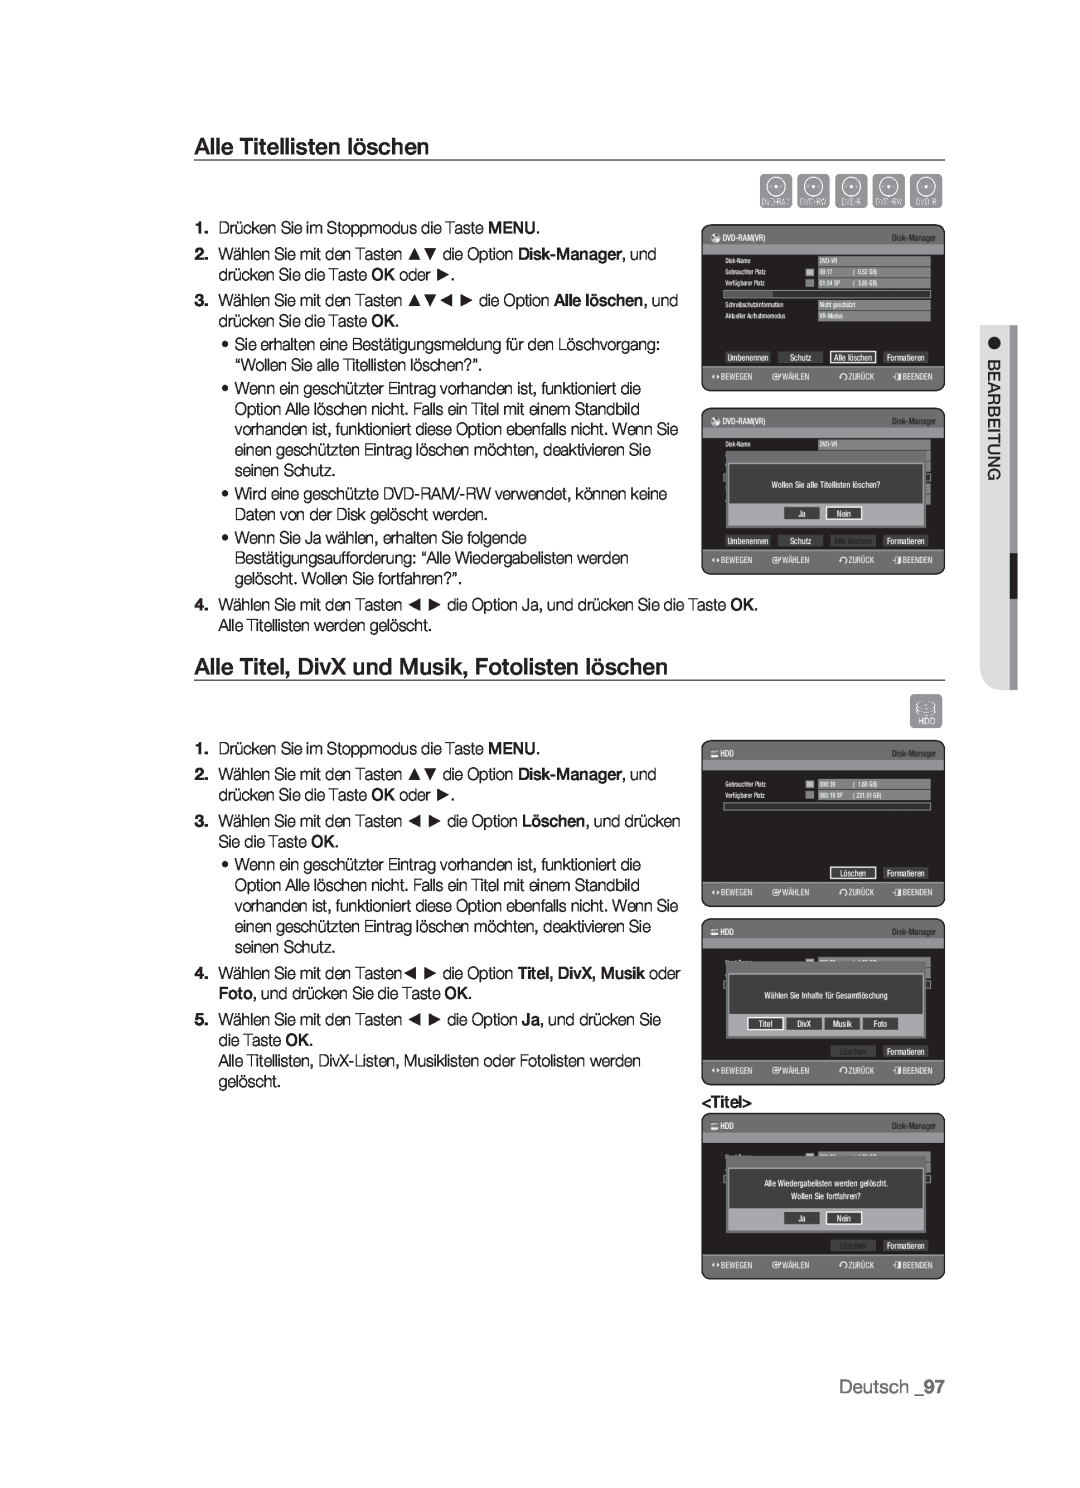 Samsung DVD-HR773/XEB manual Alle Titellisten löschen, Alle Titel, DivX und Musik, Fotolisten löschen, Xcvkl, Deutsch 